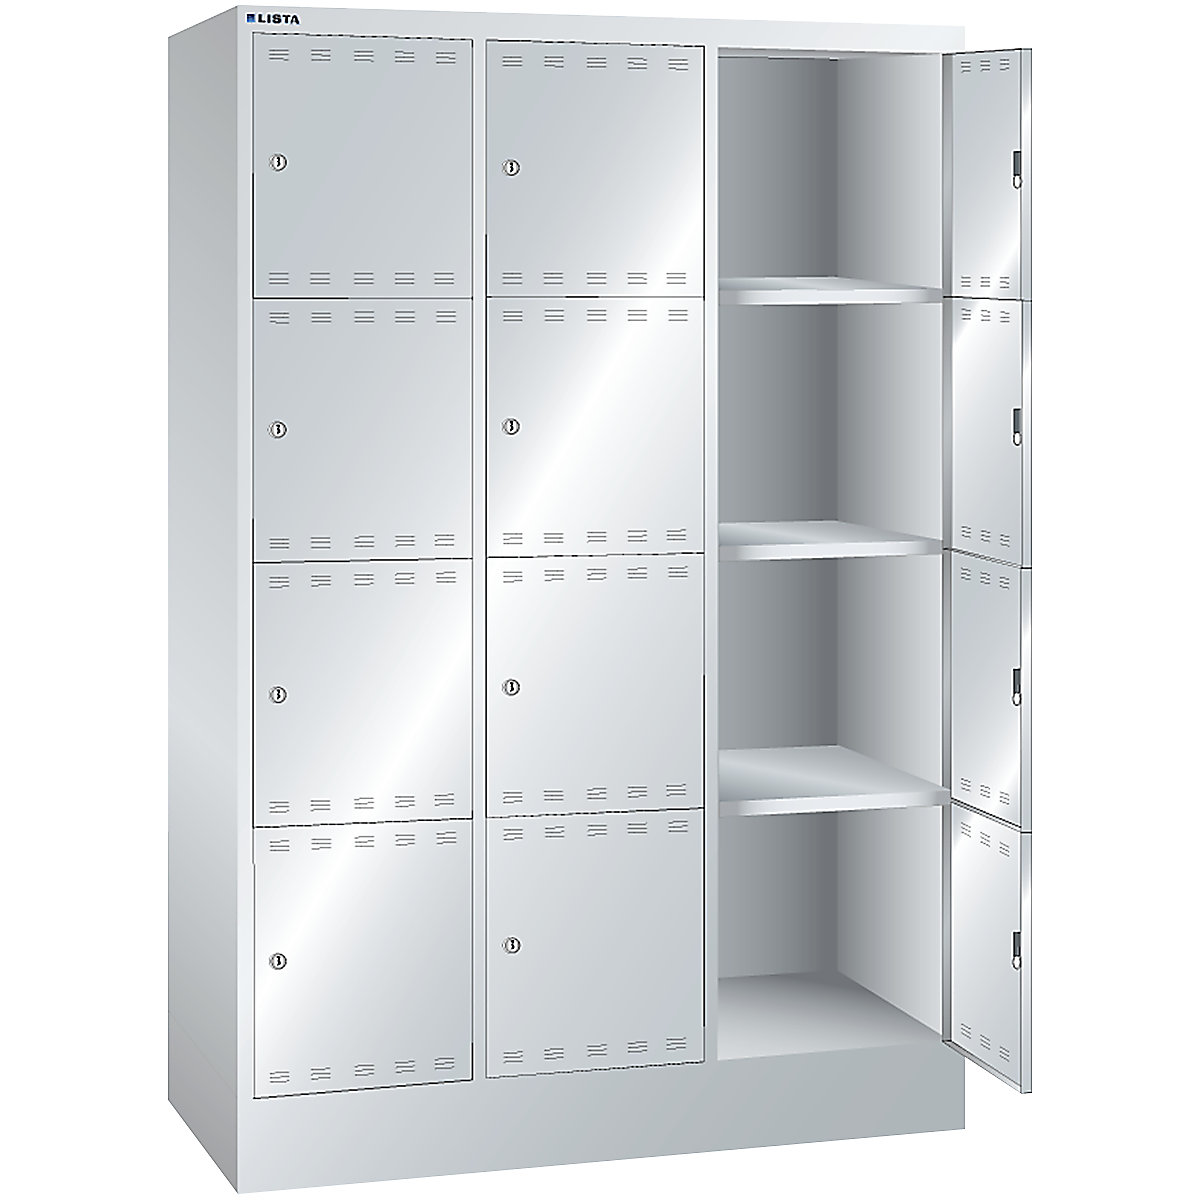 Accuoplaadkast met stroomvoorziening en lockers – LISTA (Productafbeelding 15)-14